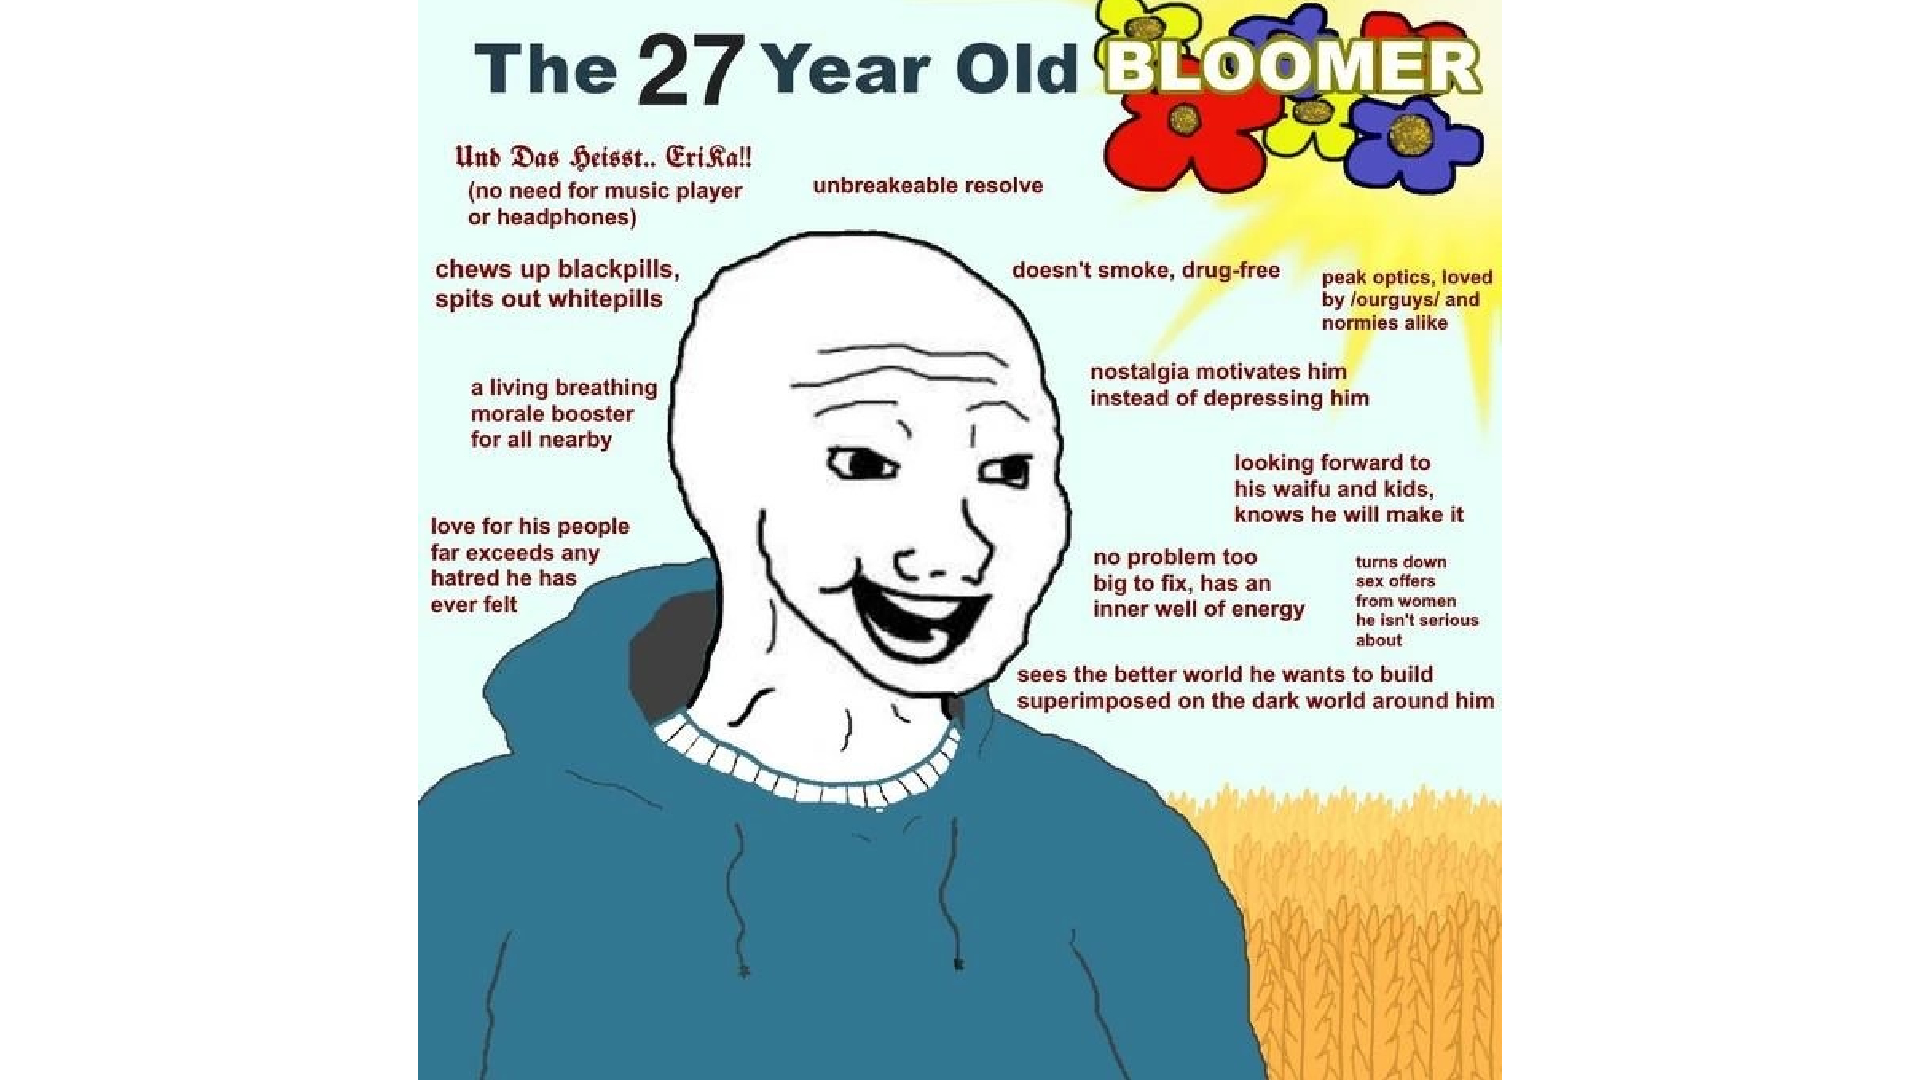 Doomer”: el meme que representa con ironía y humor el pesimismo actual